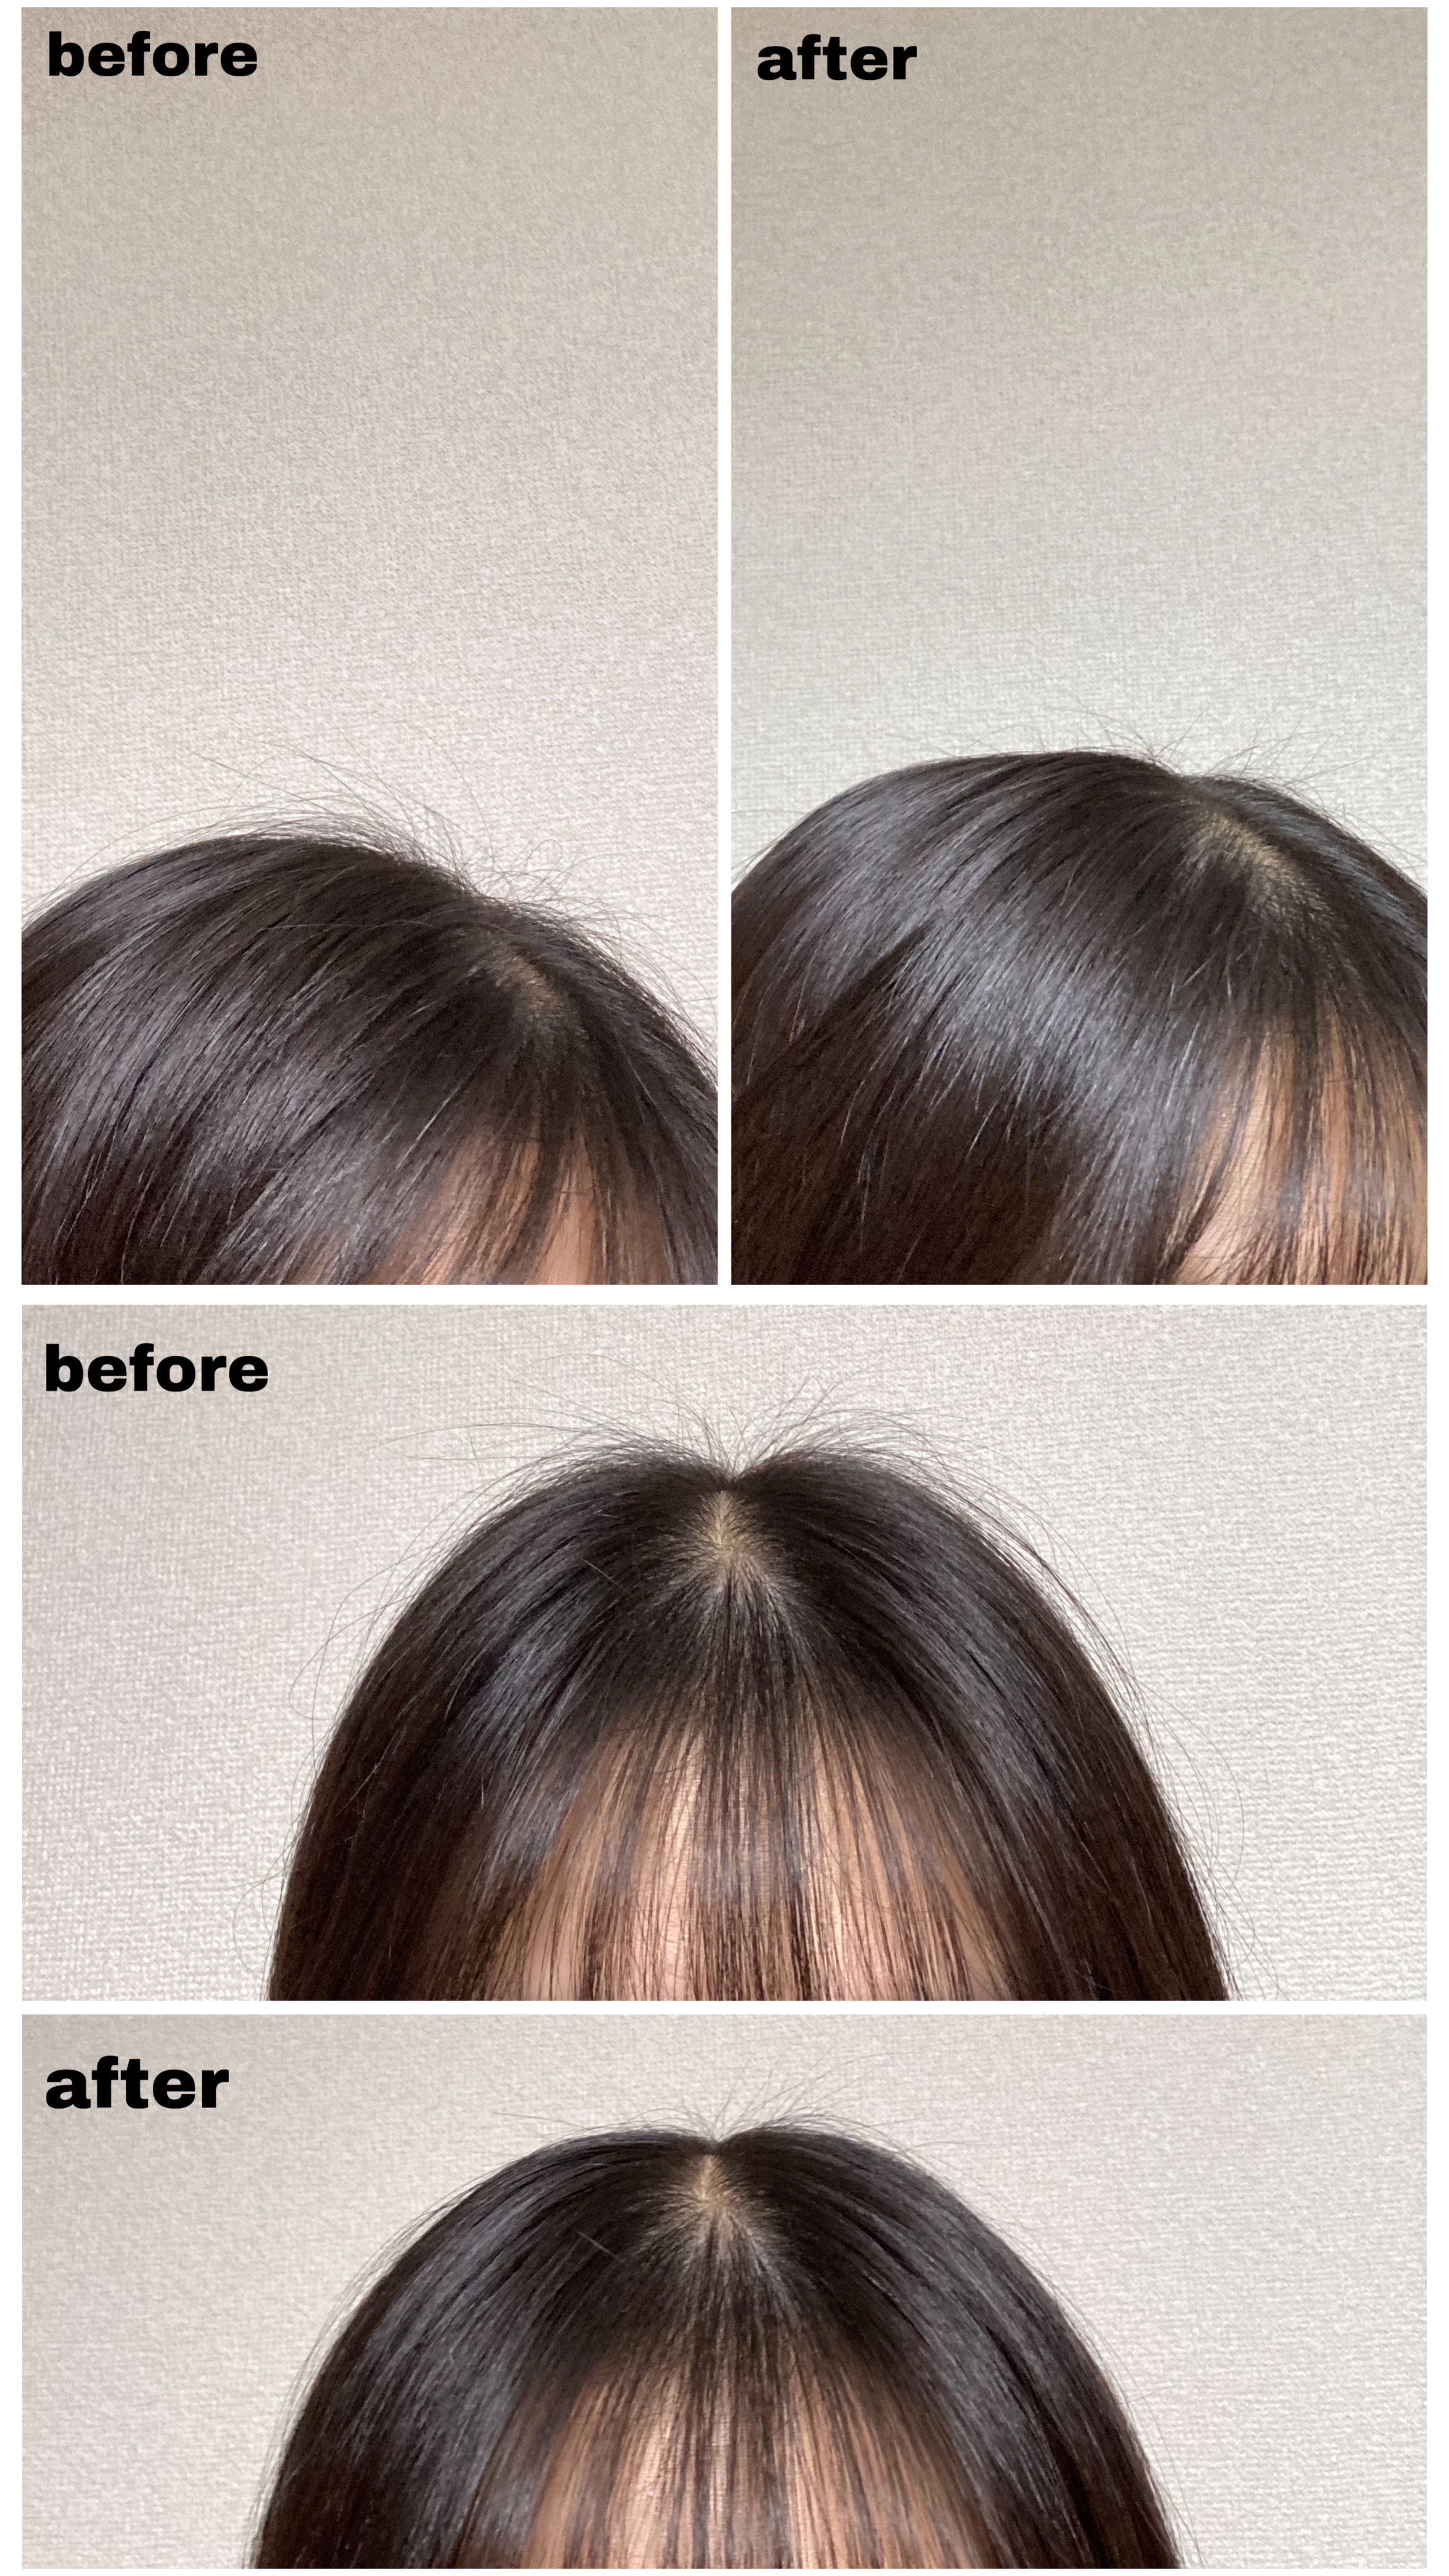 DAISO（ダイソー）の便利なヘアアイテム「まとめ髪ポイントブラシ」